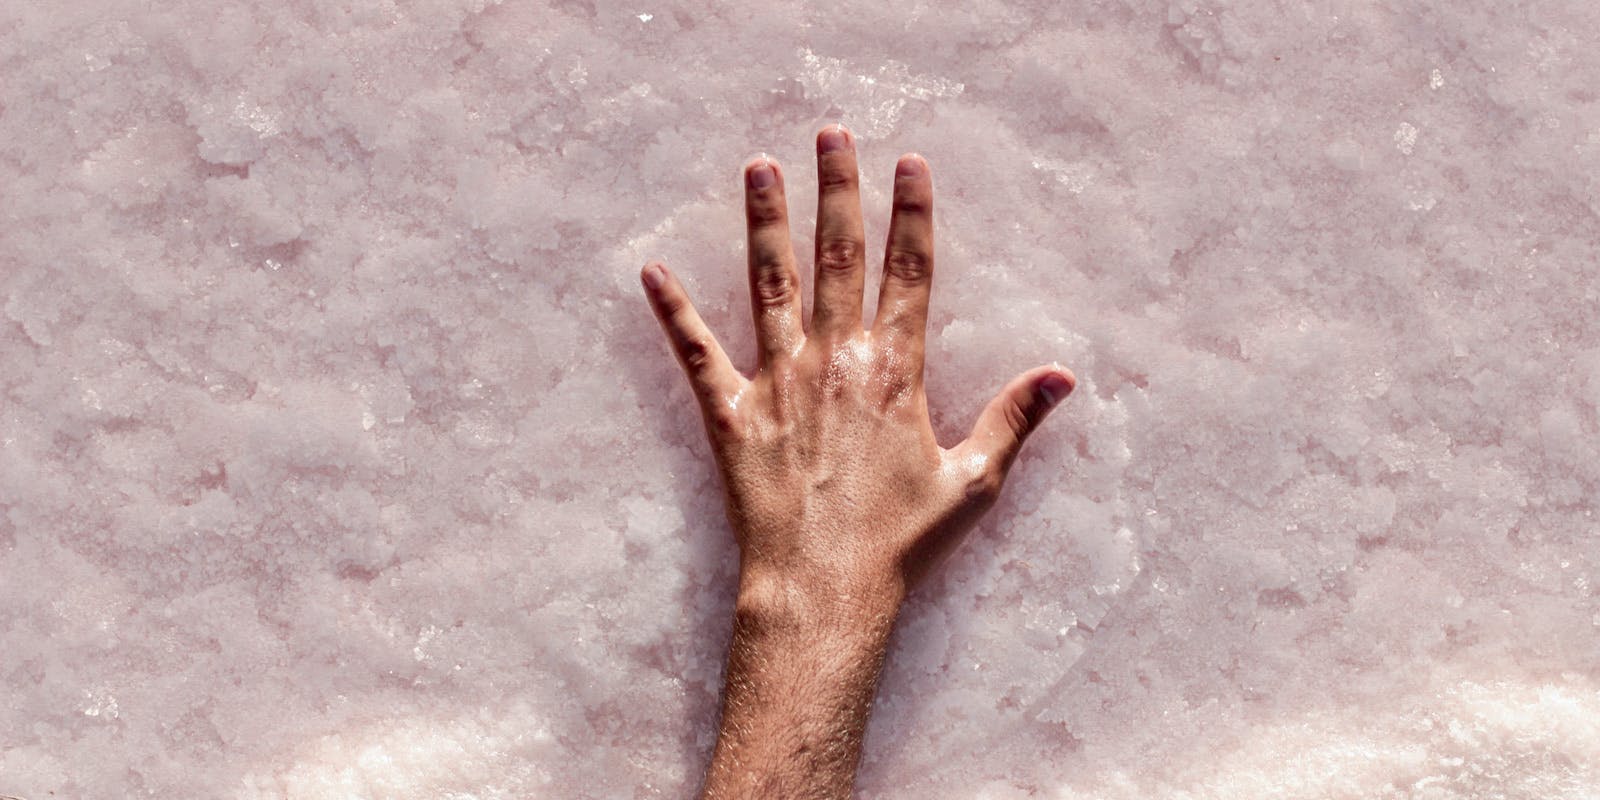 Una mano brillante se extiende sobre un lecho de sal rosa húmeda.